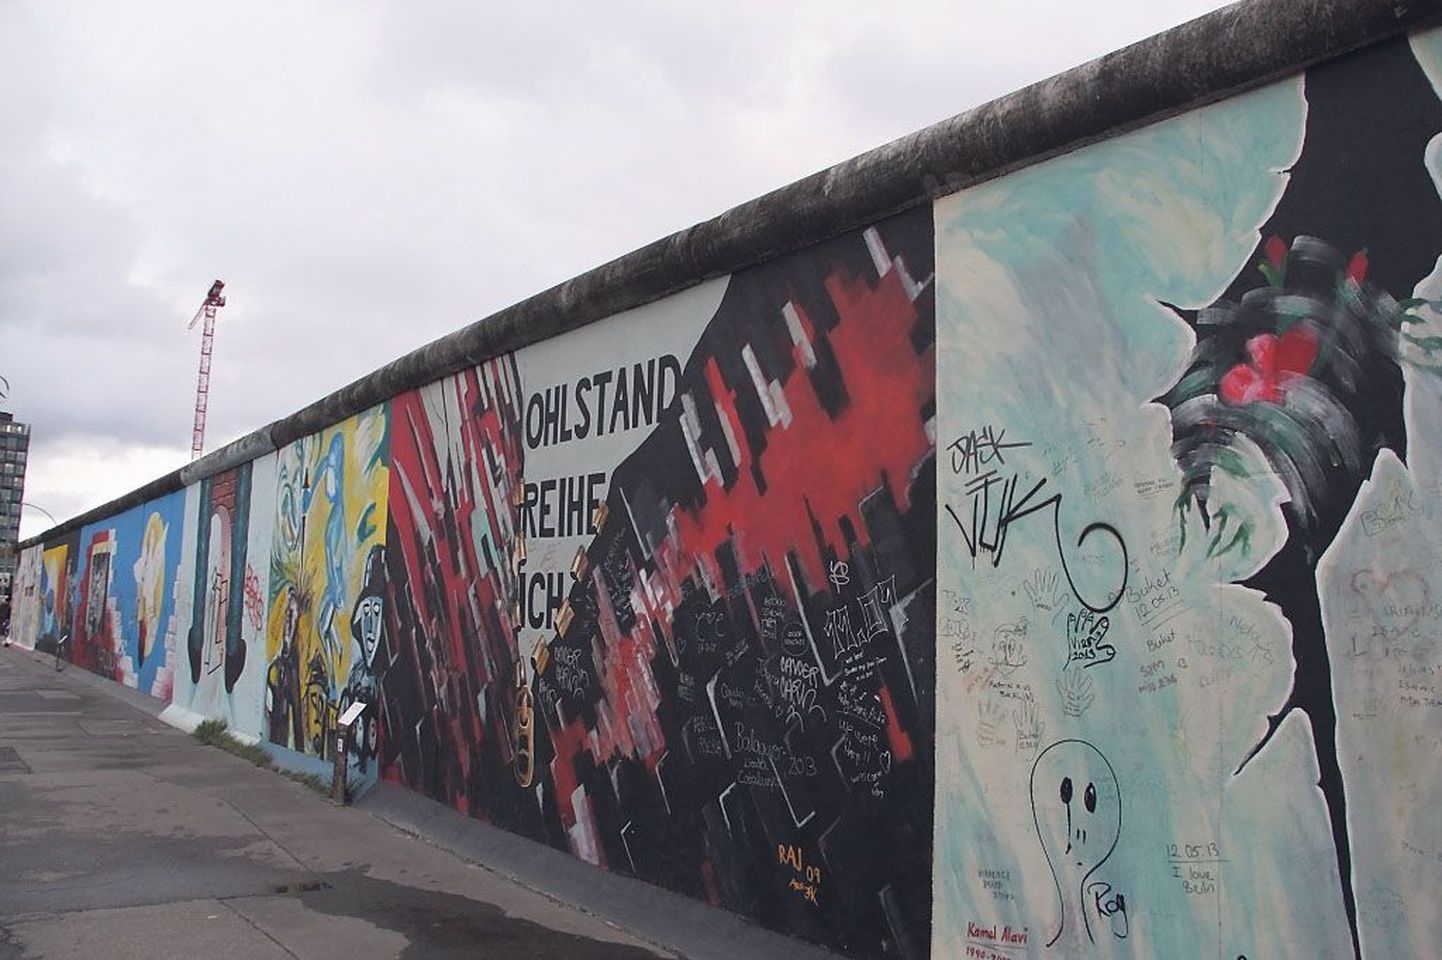 Berliini müür langes 25 aasta eest, kuid filmikaadrid sellest toovad veel praegugi kananaha ihule.